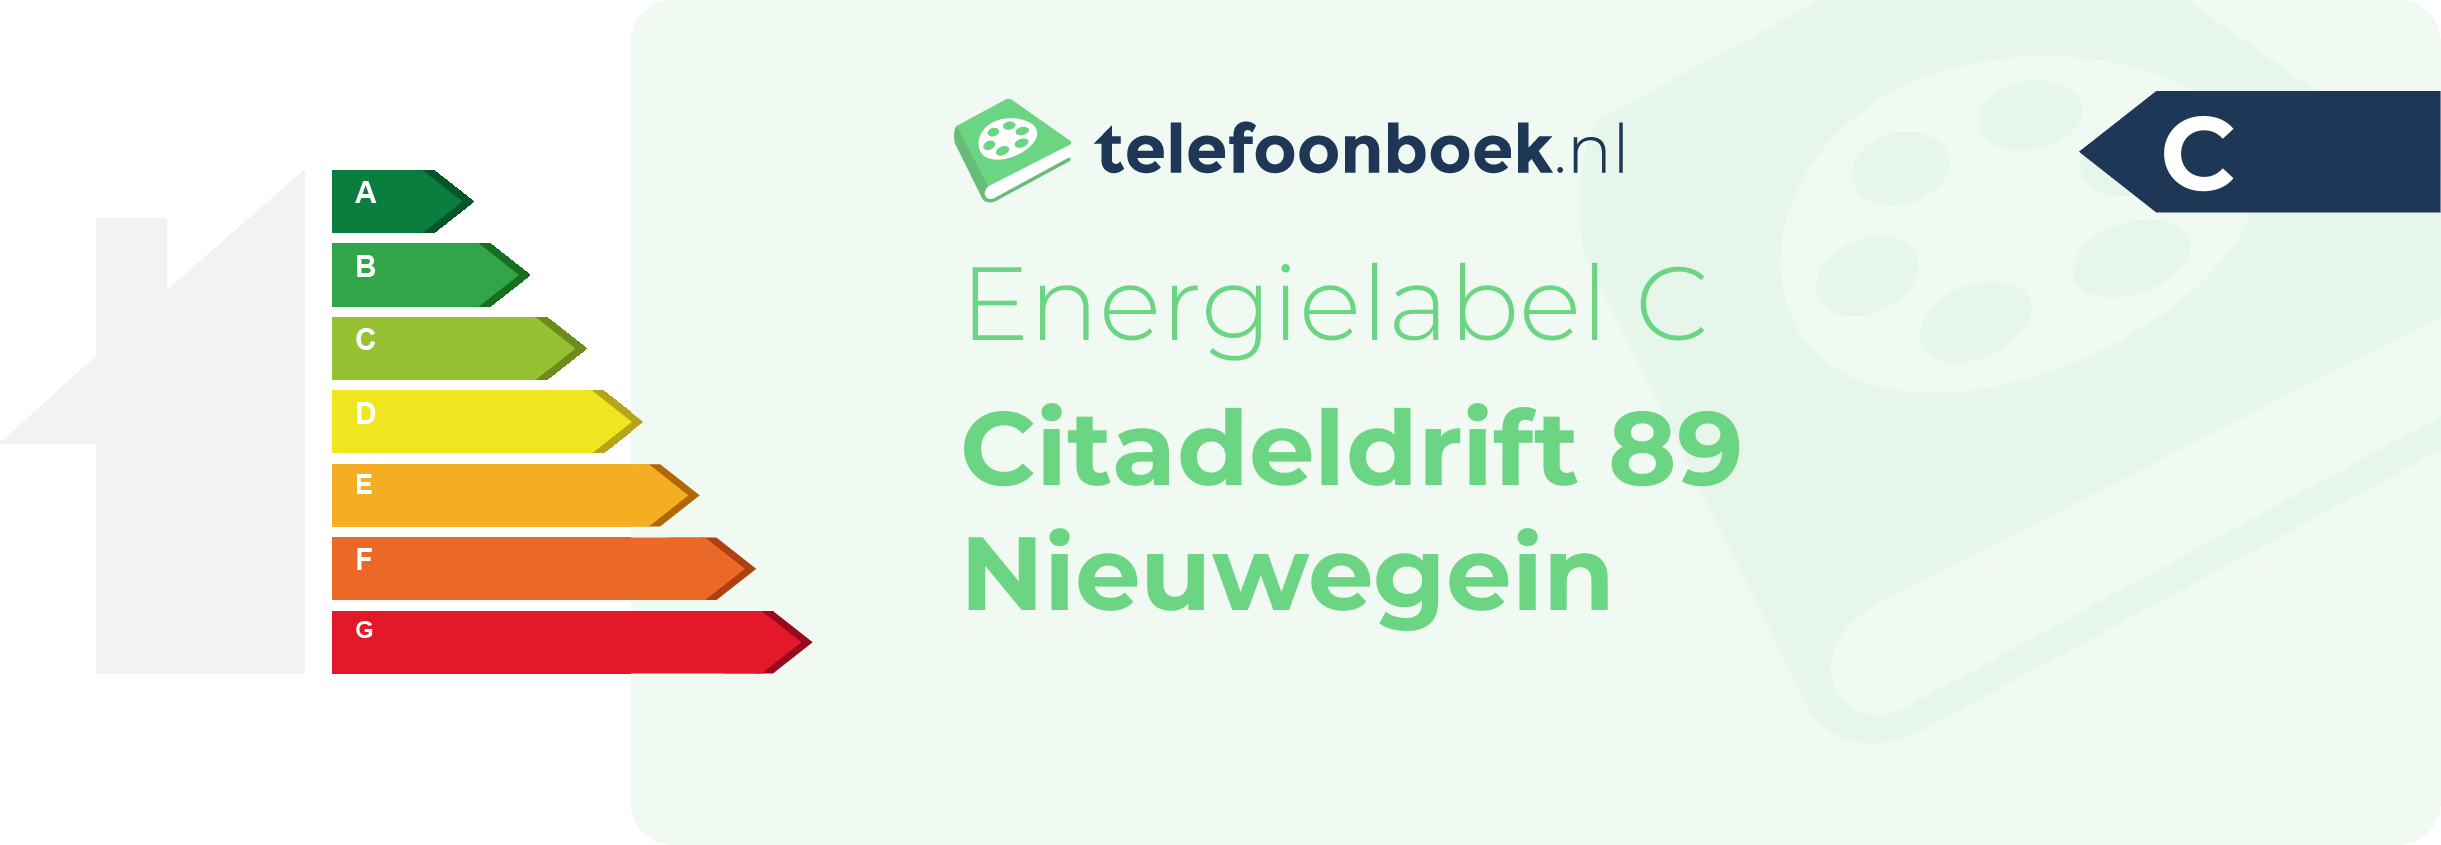 Energielabel Citadeldrift 89 Nieuwegein